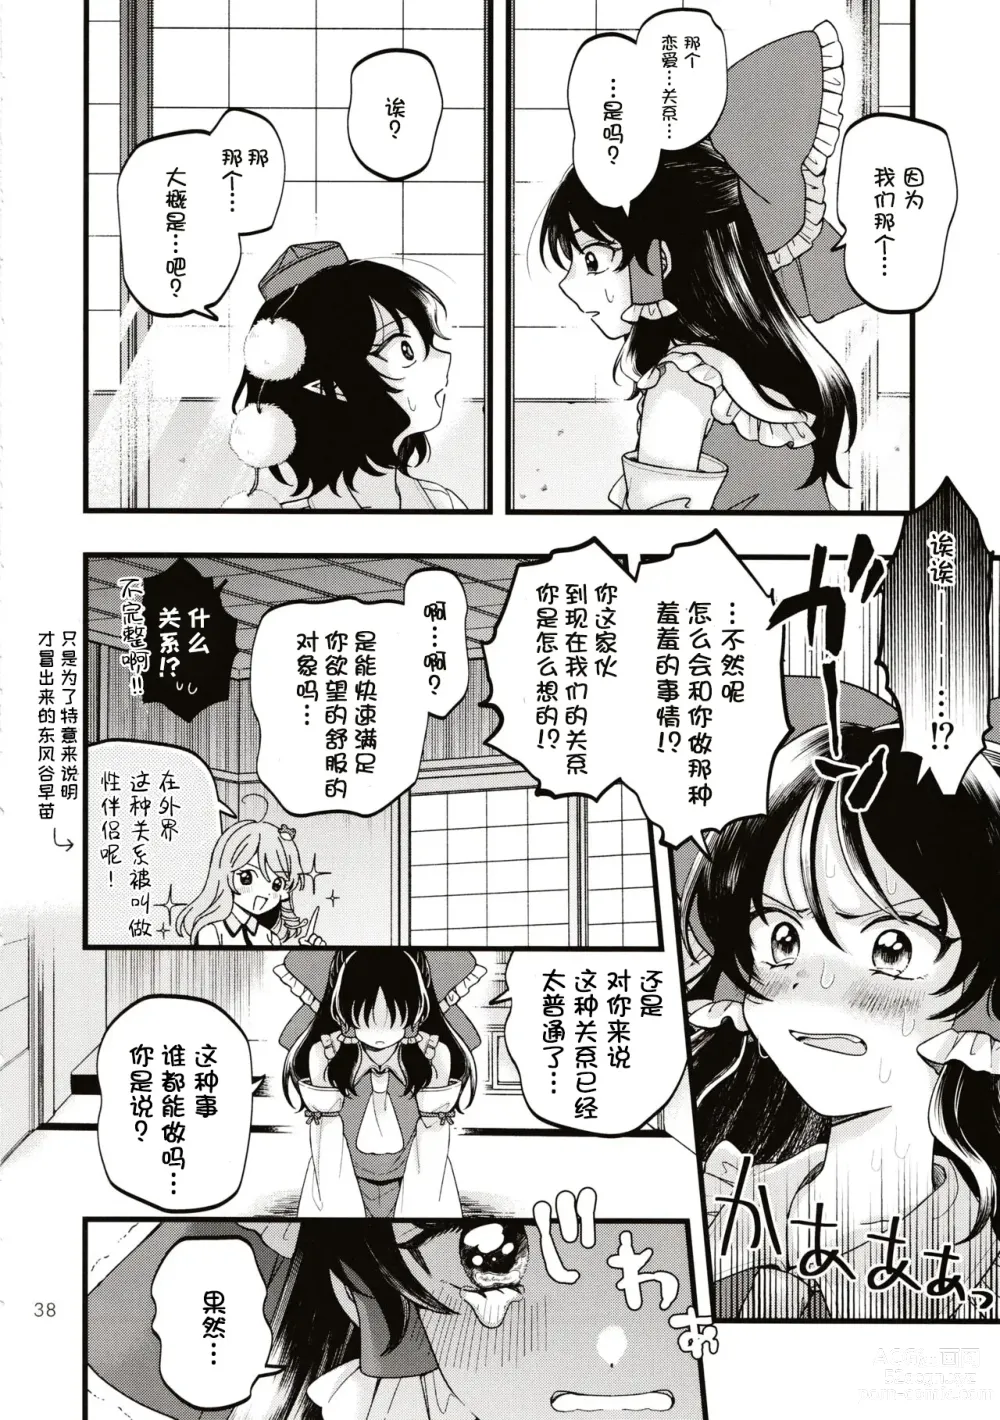 Page 37 of doujinshi Rubeus no Kankai